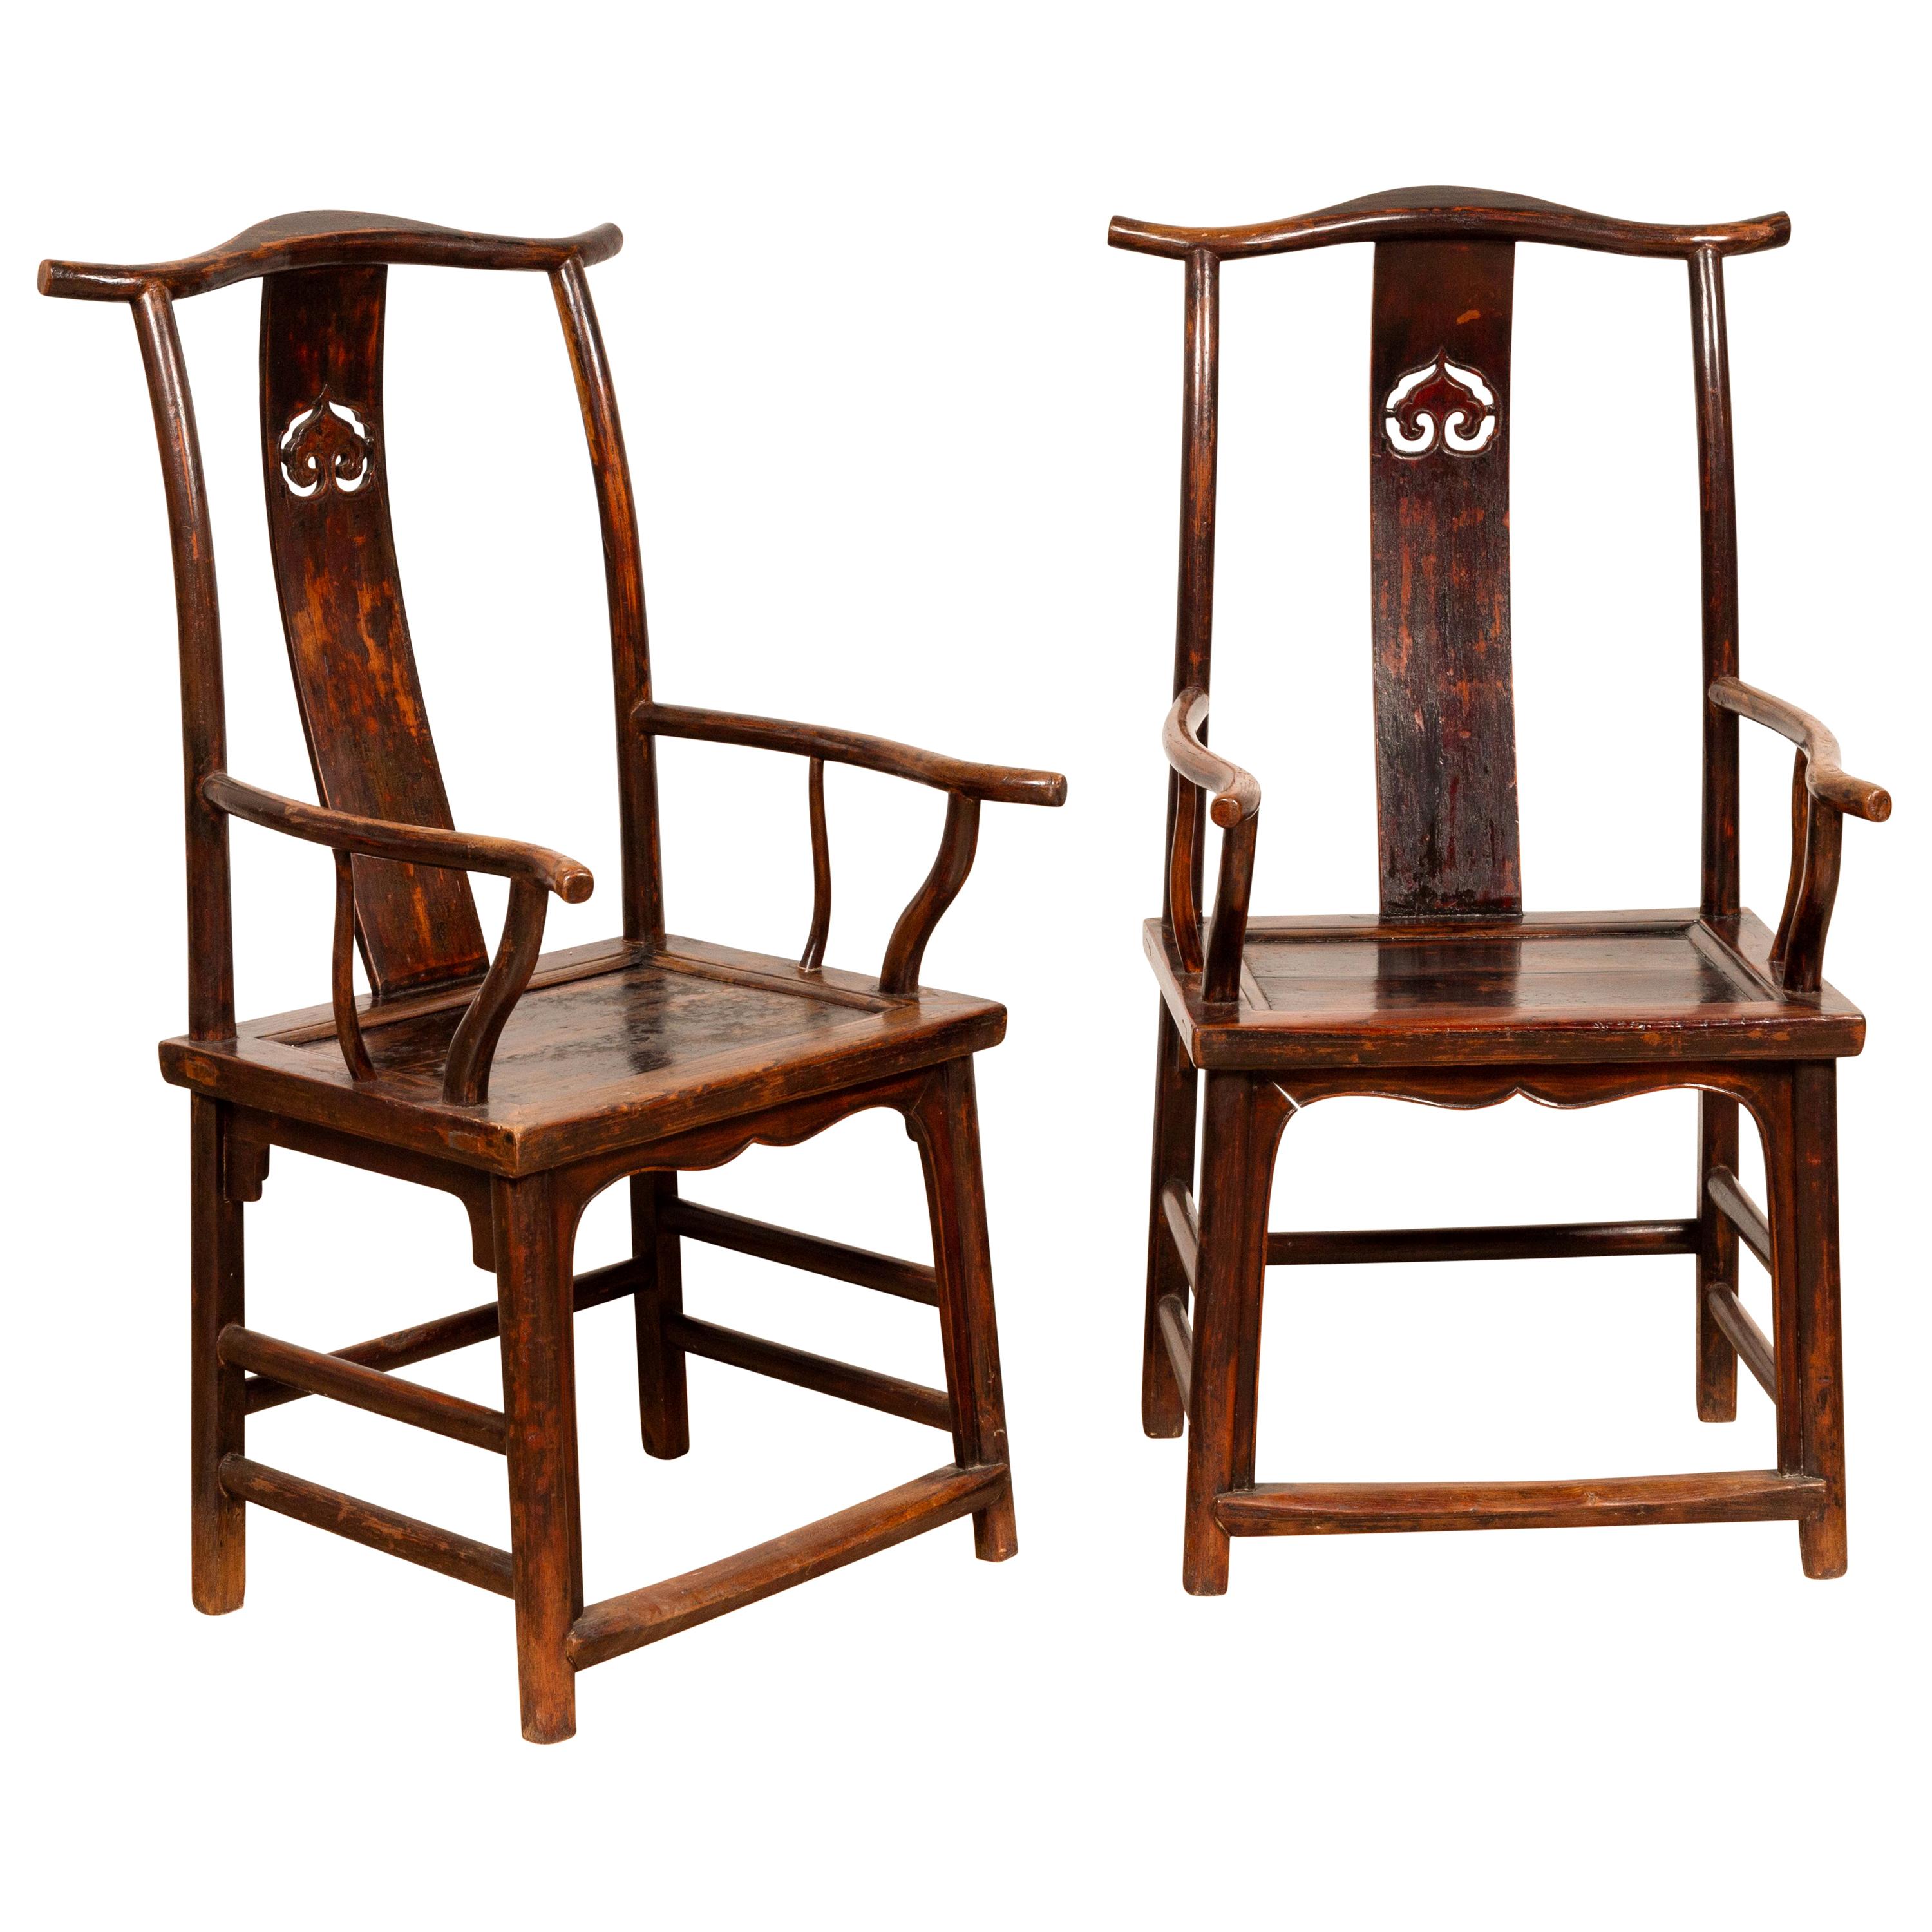 Paar chinesische Offiziershut-Stühle der 1880er Jahre mit durchbrochenen Lehnen und geschwungenen Armlehnen